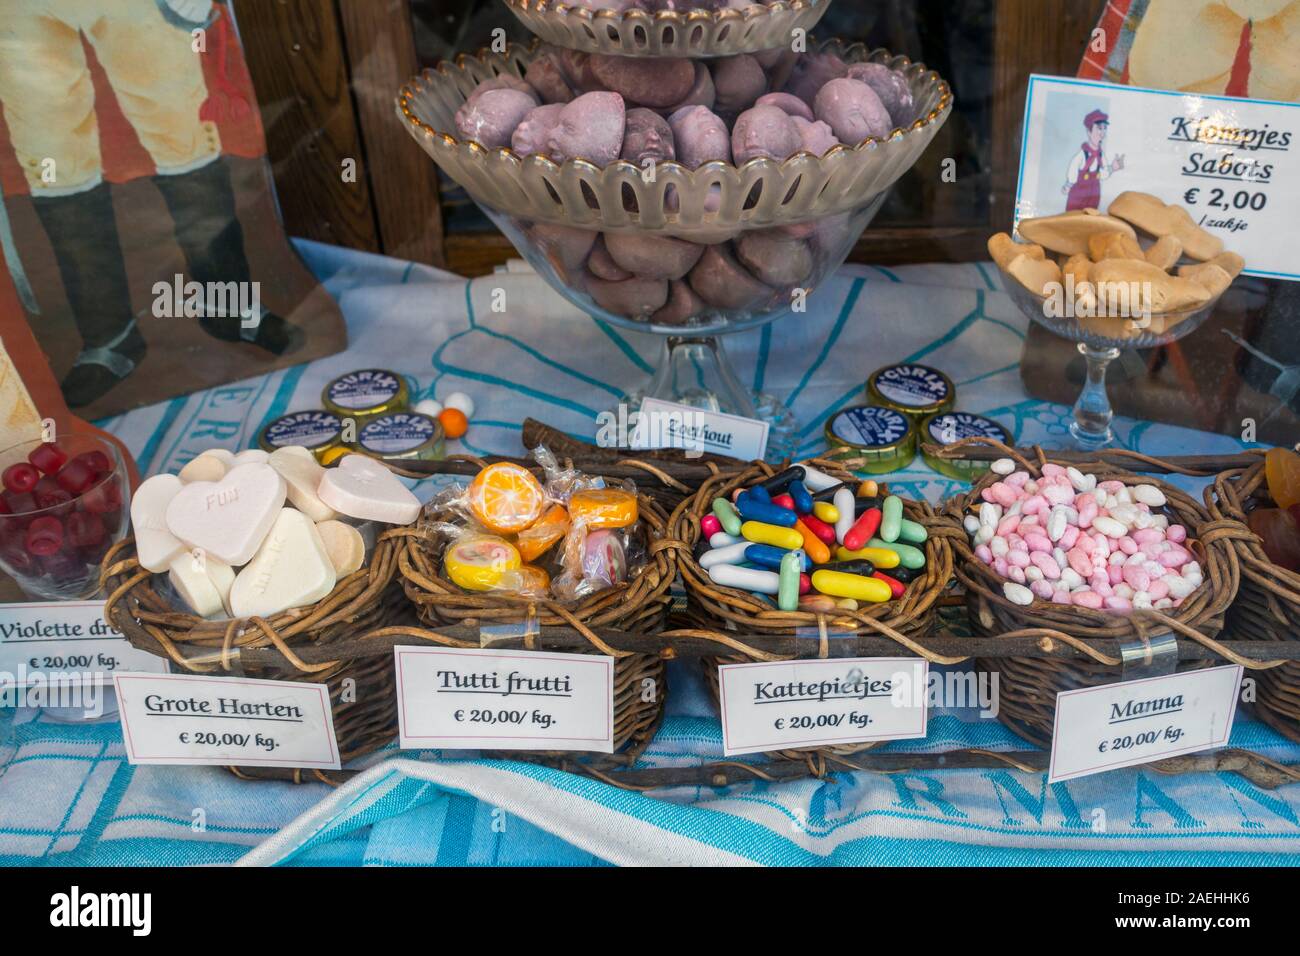 Spécialités belges et des bonbons typiques de Gand dans la fenêtre d'affichage de Sweet Shop / magasin de bonbons dans la ville de Gand, Flandre orientale, Belgique Banque D'Images